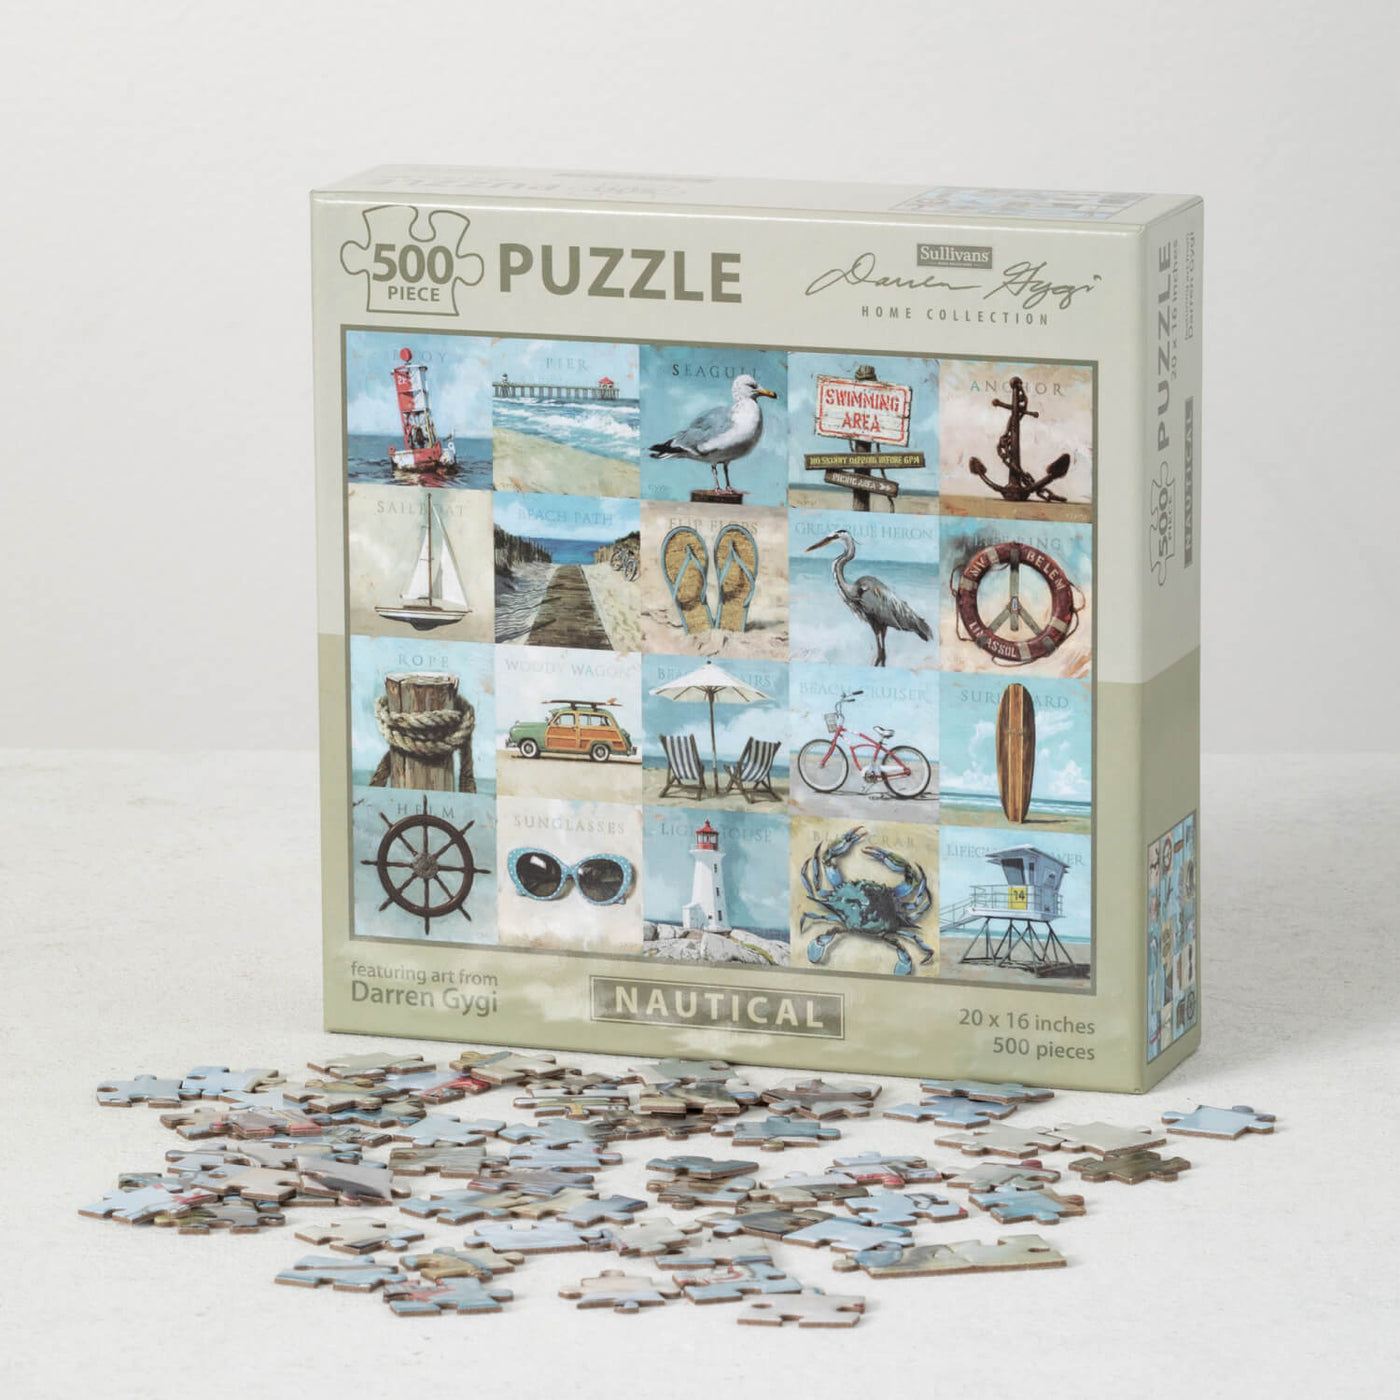 Darren Gygi 500 piece nautical jigsaw puzzle